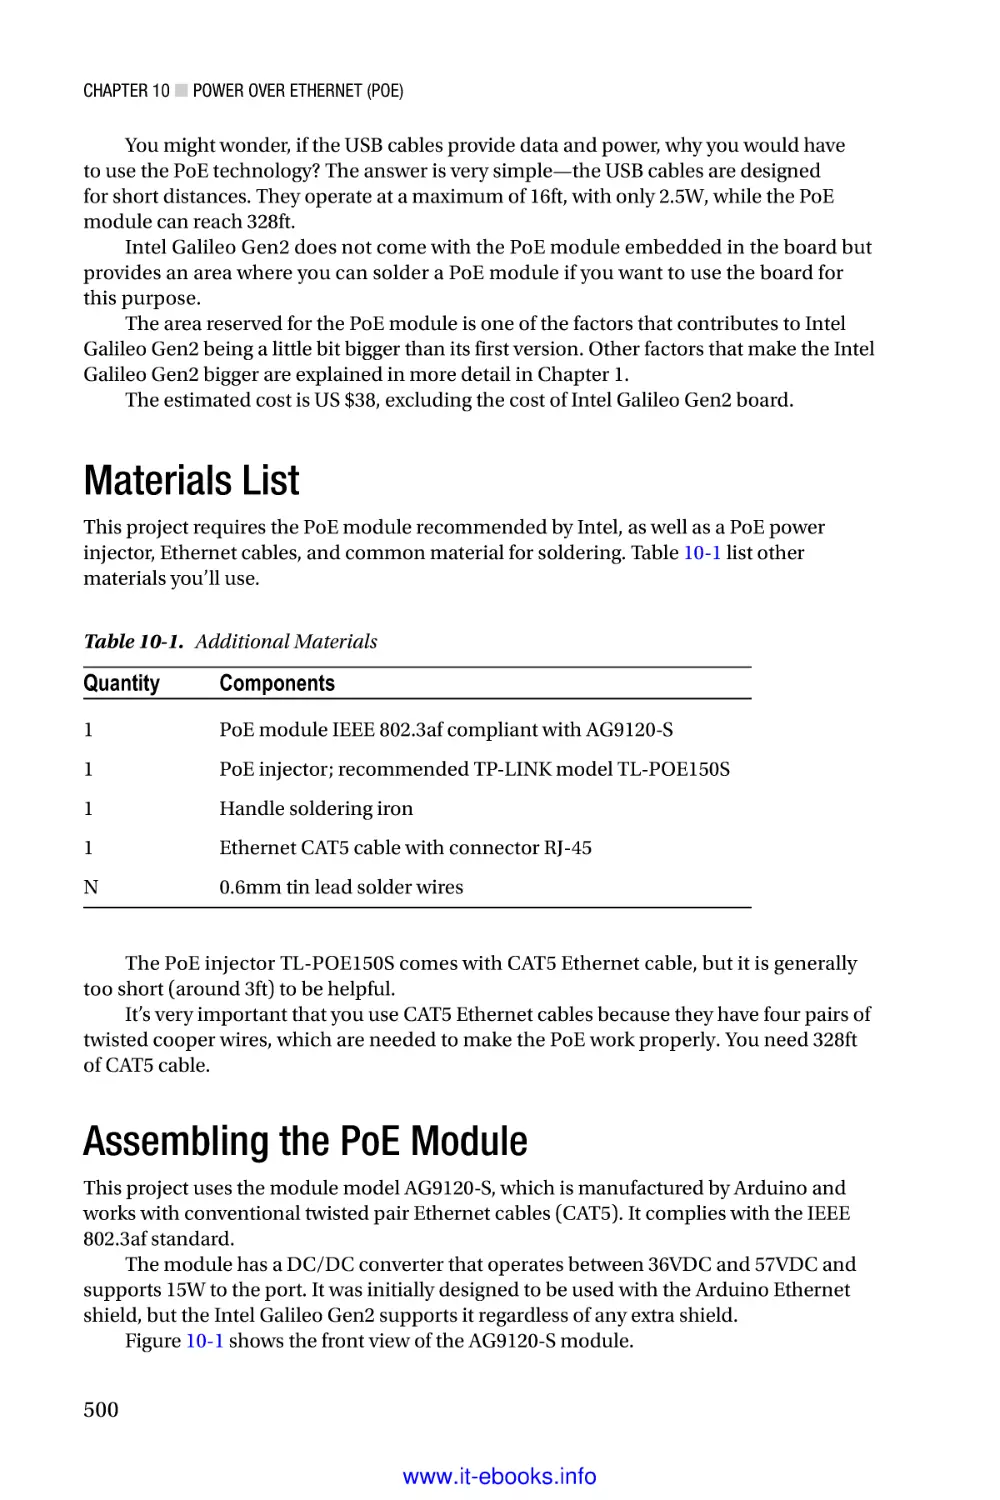 Materials List
Assembling the PoE Module